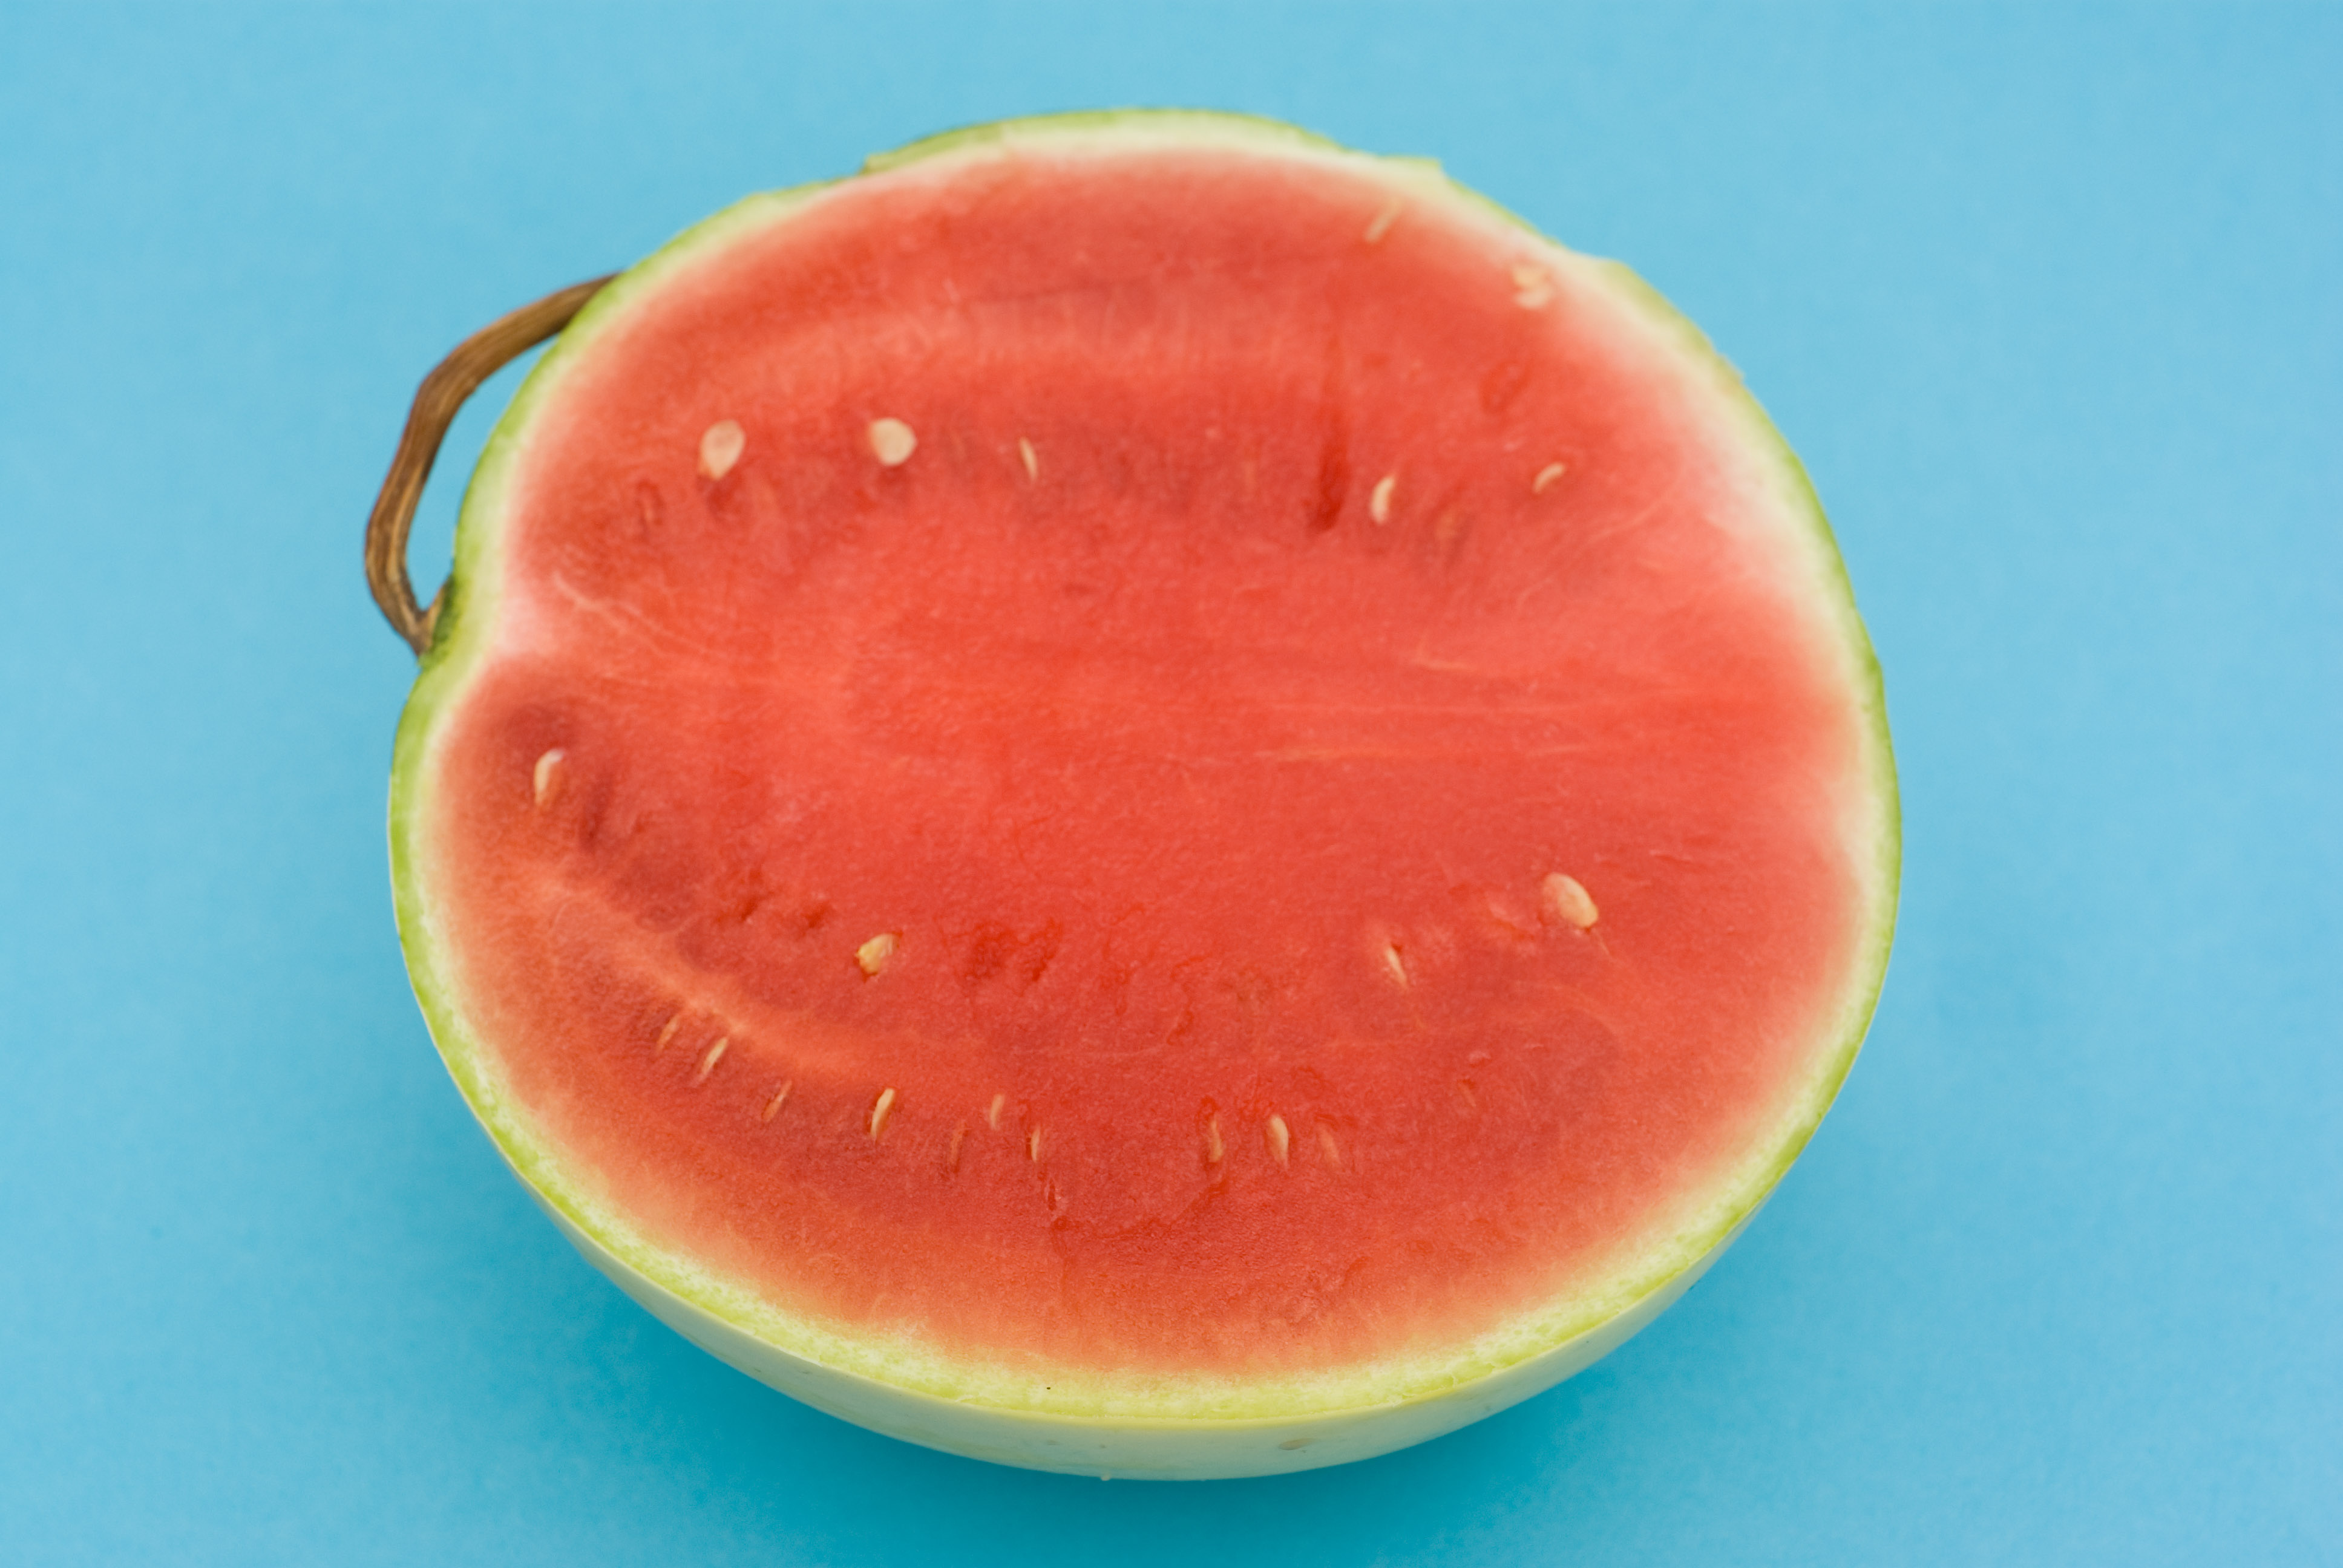 A nyugat-európai piacokon különösen keresett a magnélkülinek nevezett, valójában magszegény görögdinnye.